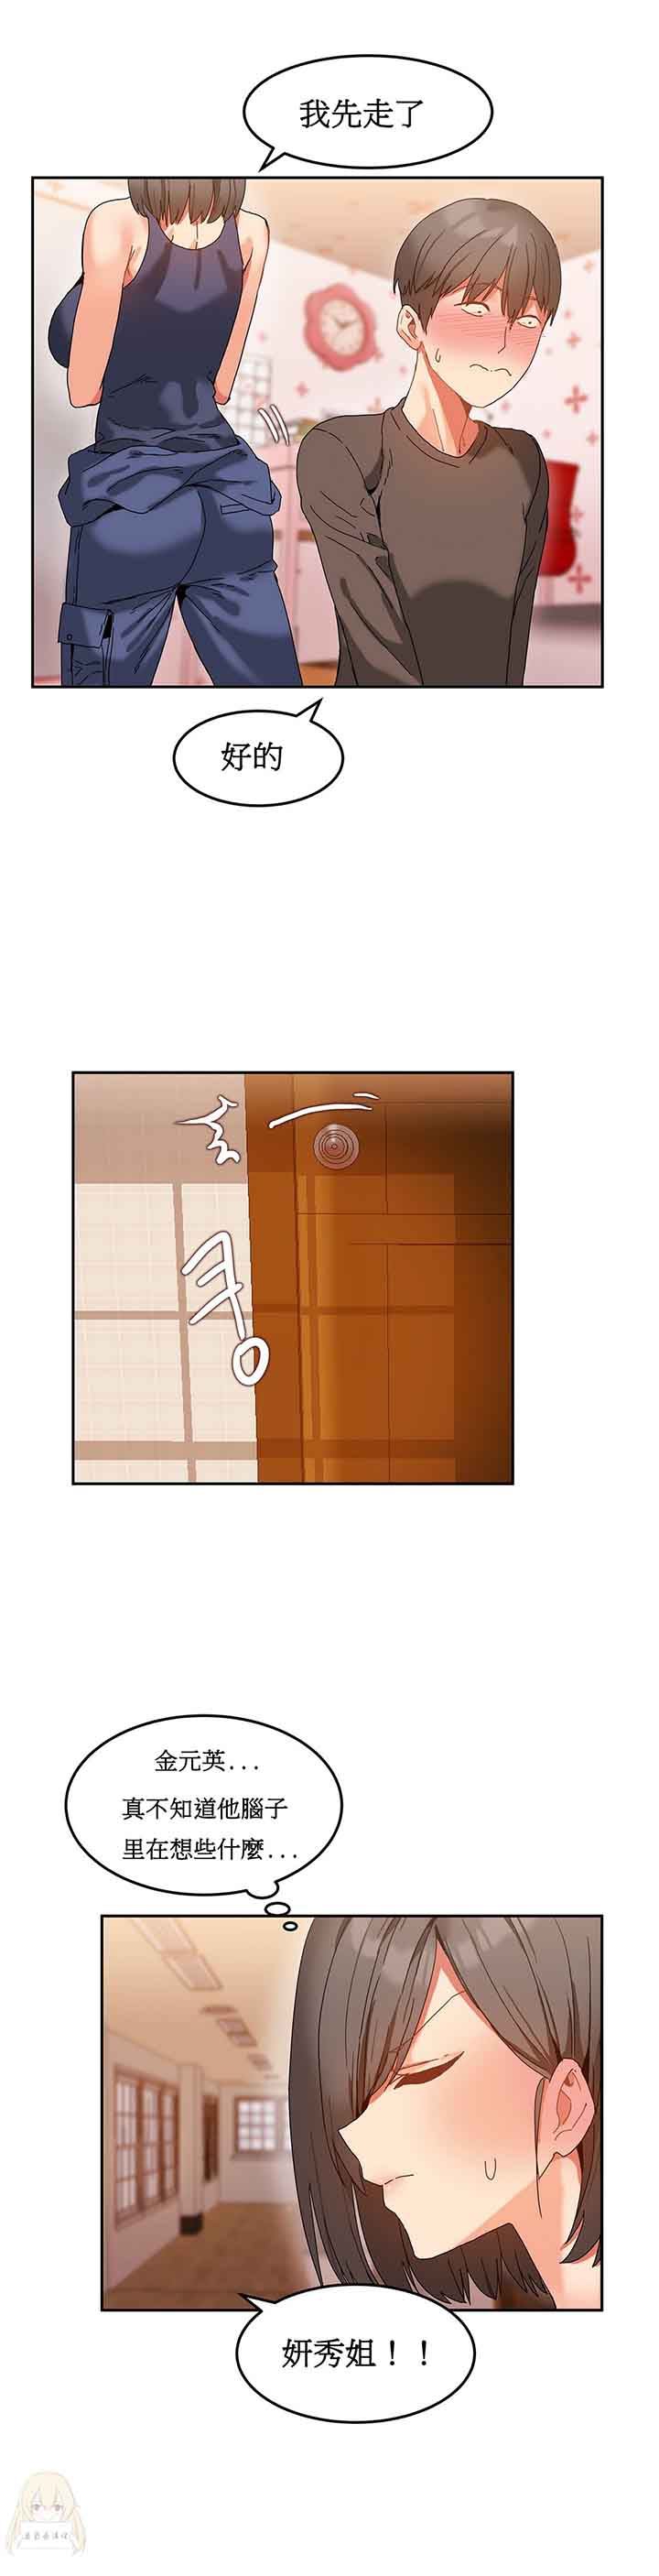 韩国污漫画 寄宿公寓-陰氣之洞 第9话 22